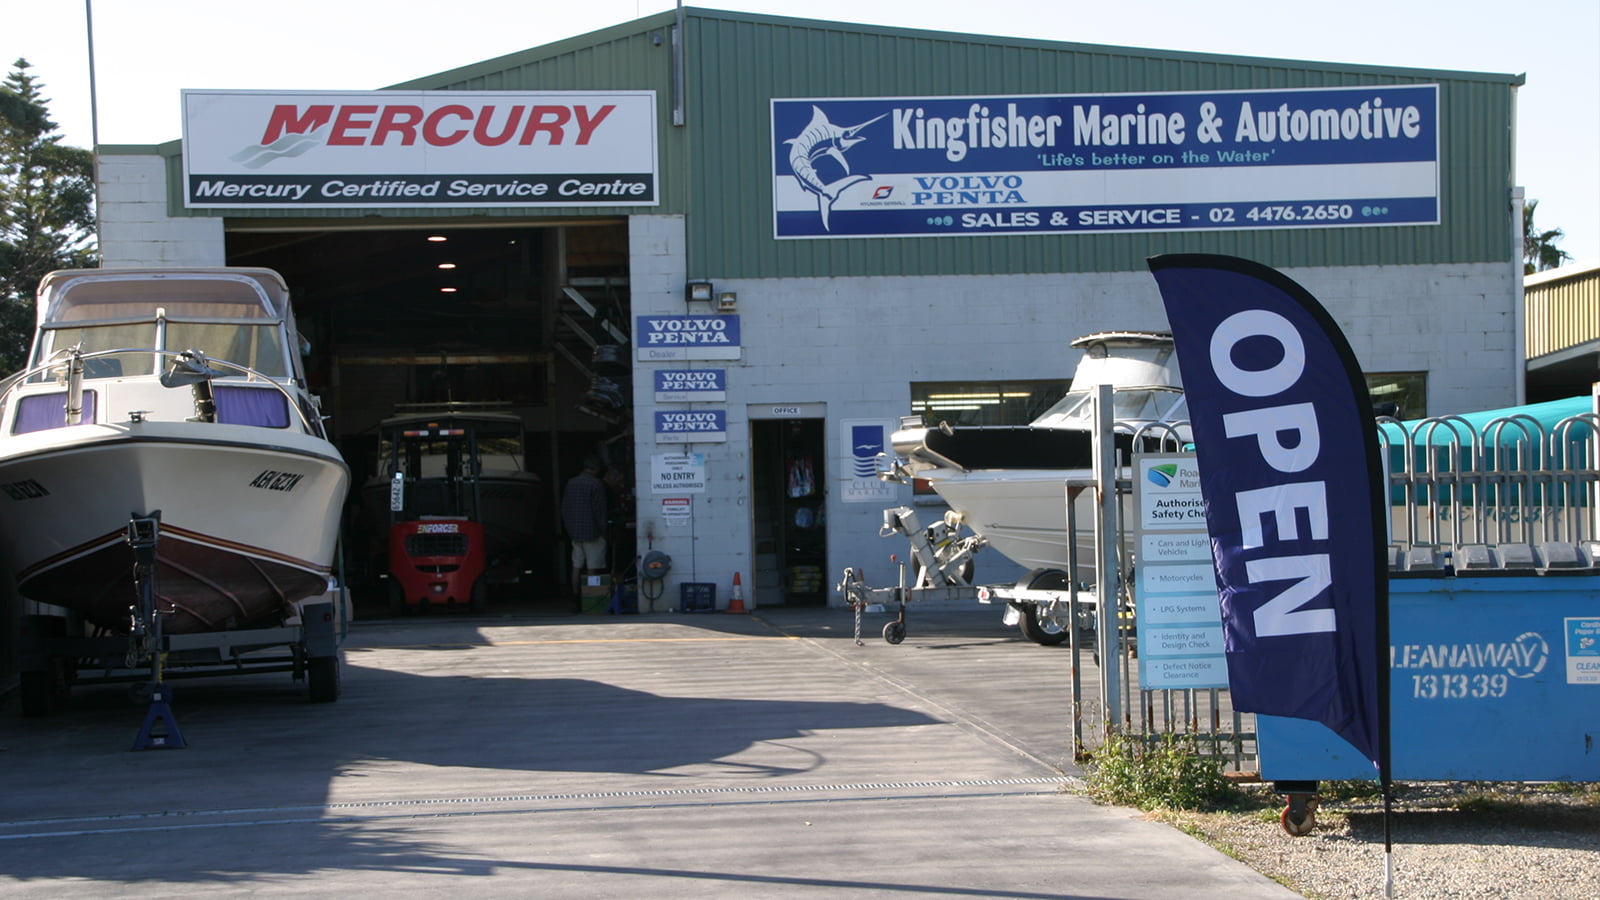 Kingfisher Marine and Automotive